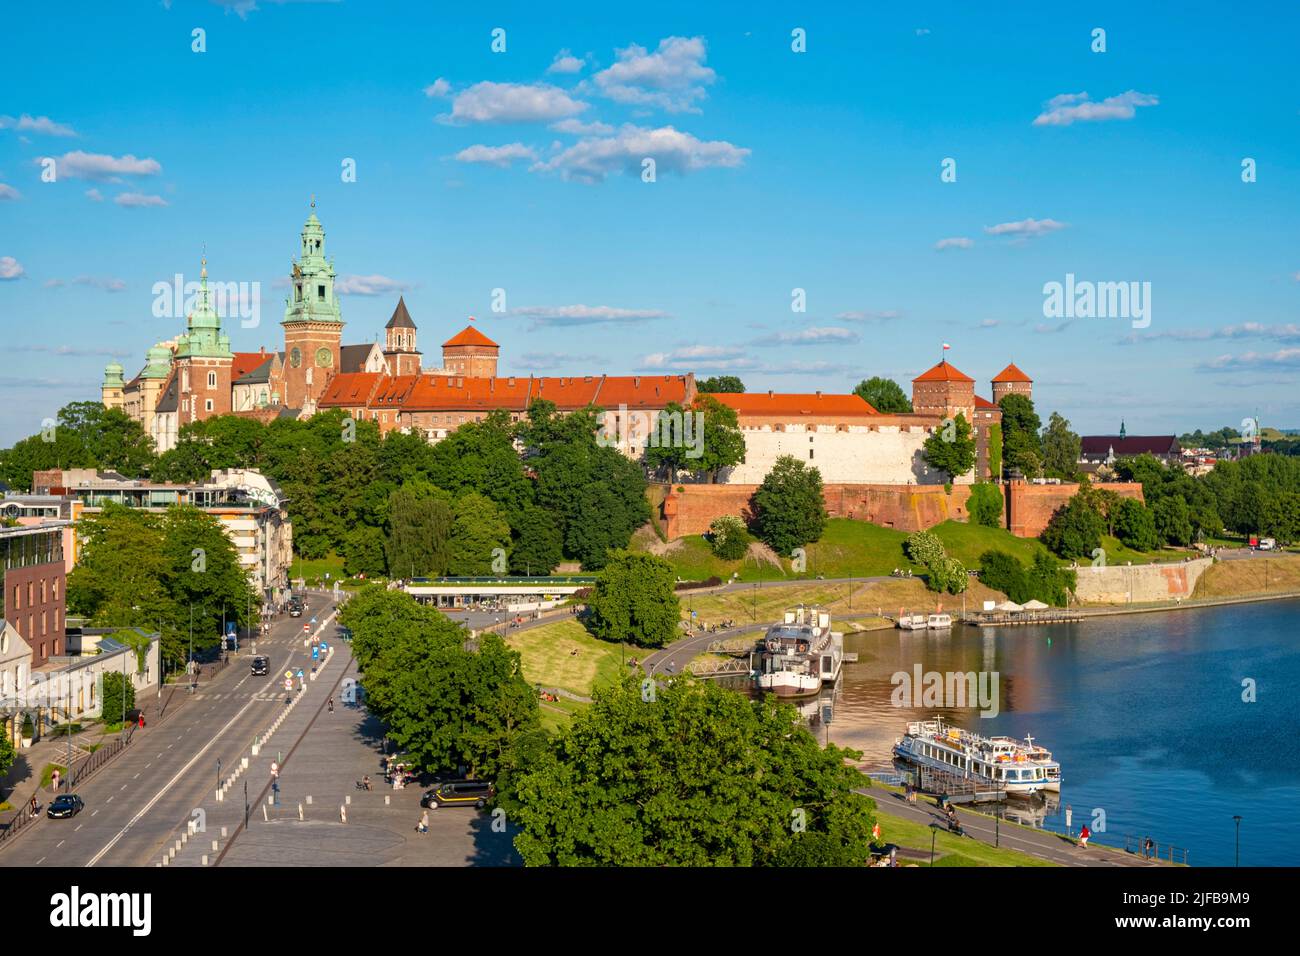 Polonia, Pequeña Polonia, Cracovia, declarada Patrimonio de la Humanidad por la UNESCO, Royal Hill, Castillo de Wawel a orillas del río Vístula Foto de stock